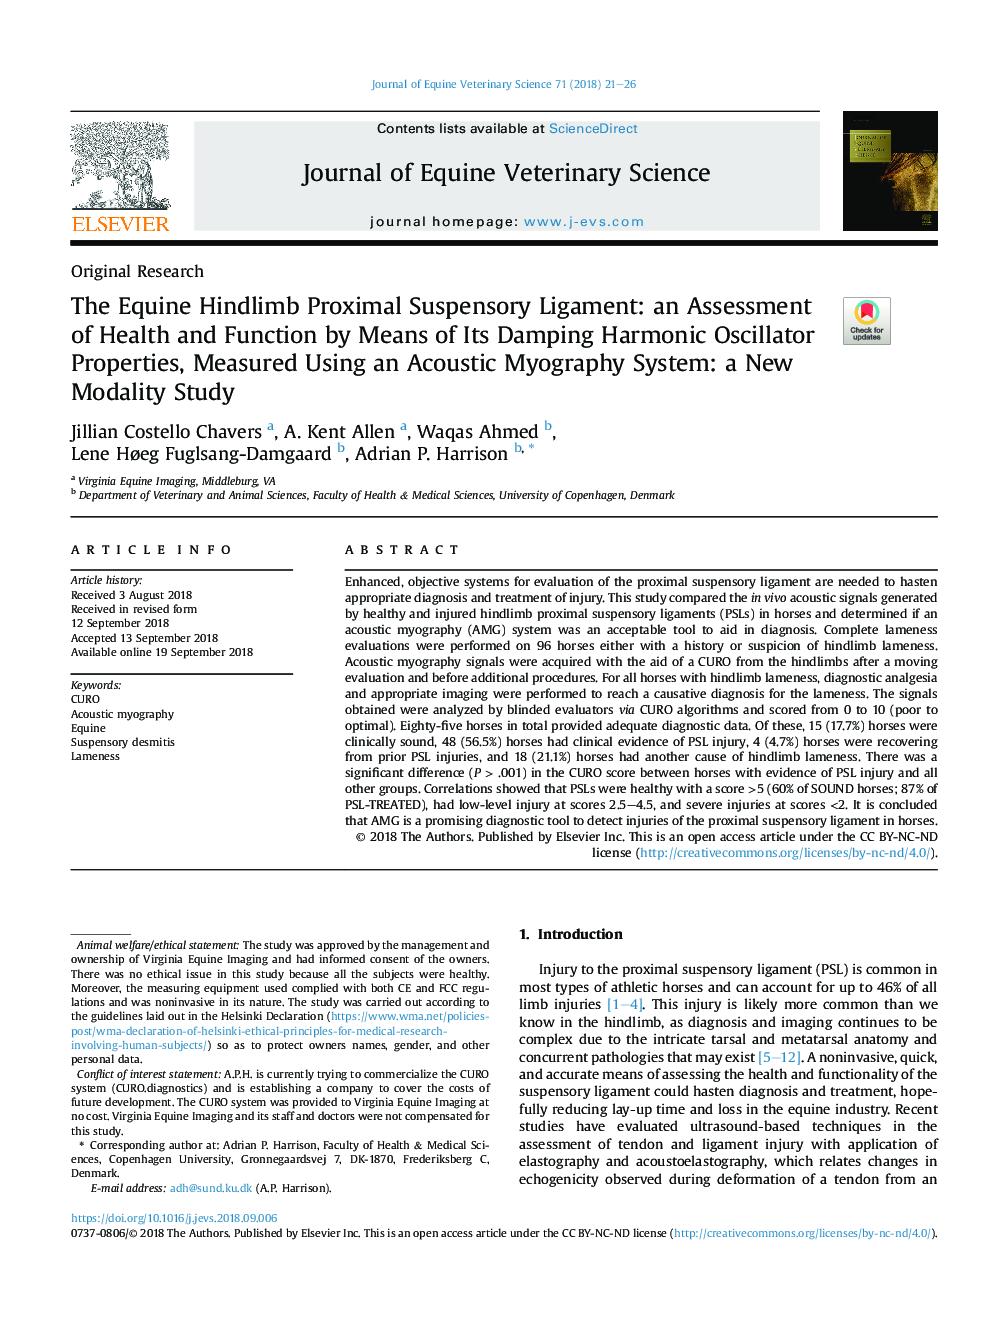 تسلیم انقباض پروگزیمال اسکندر: ارزیابی سلامت و عملکرد با استفاده از خواص نوسان هارمونیک شیب دار آن، با استفاده از یک سیستم میکروفون آکوستیک: یک مطالعه ی مدرنی جدید